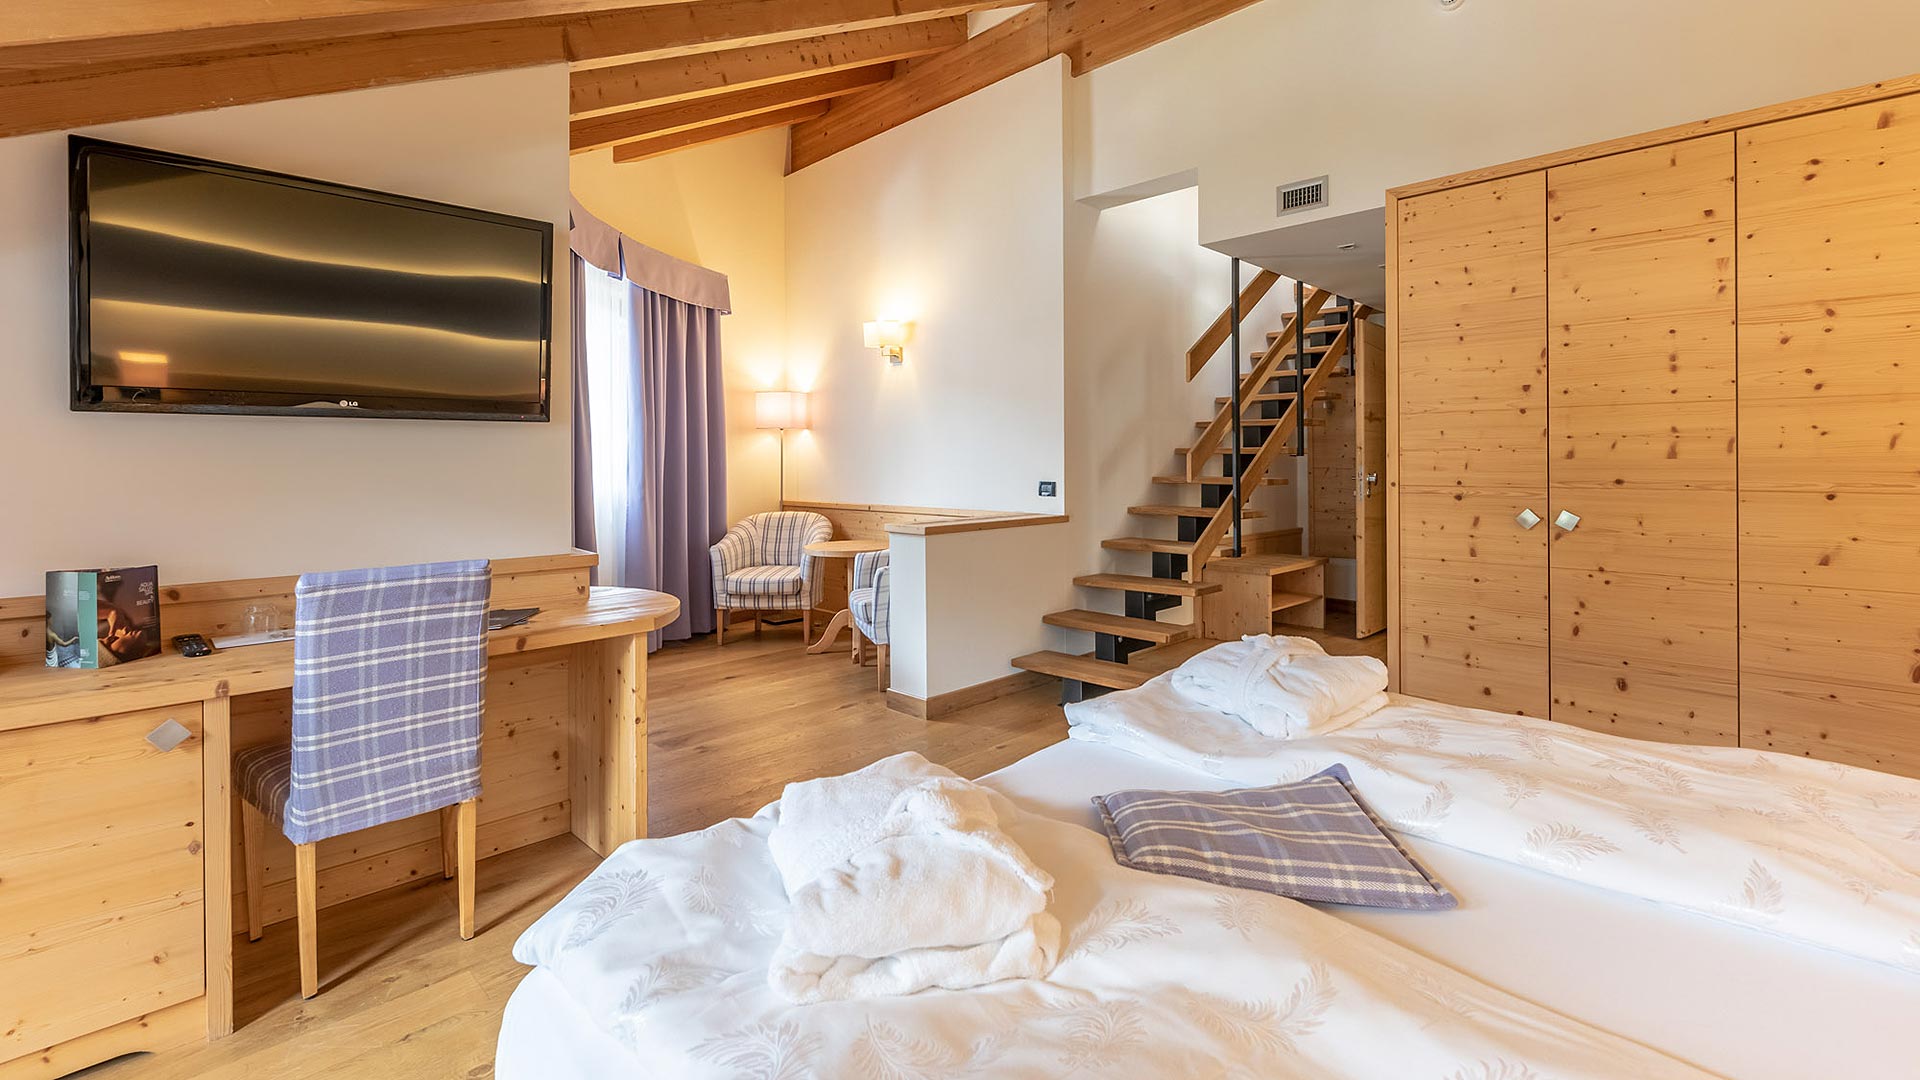 Se siete alla ricerca di un posto accogliente, dove dormire in Val di Sole durante il vostro soggiorno, venite a scoprire le nostre camere